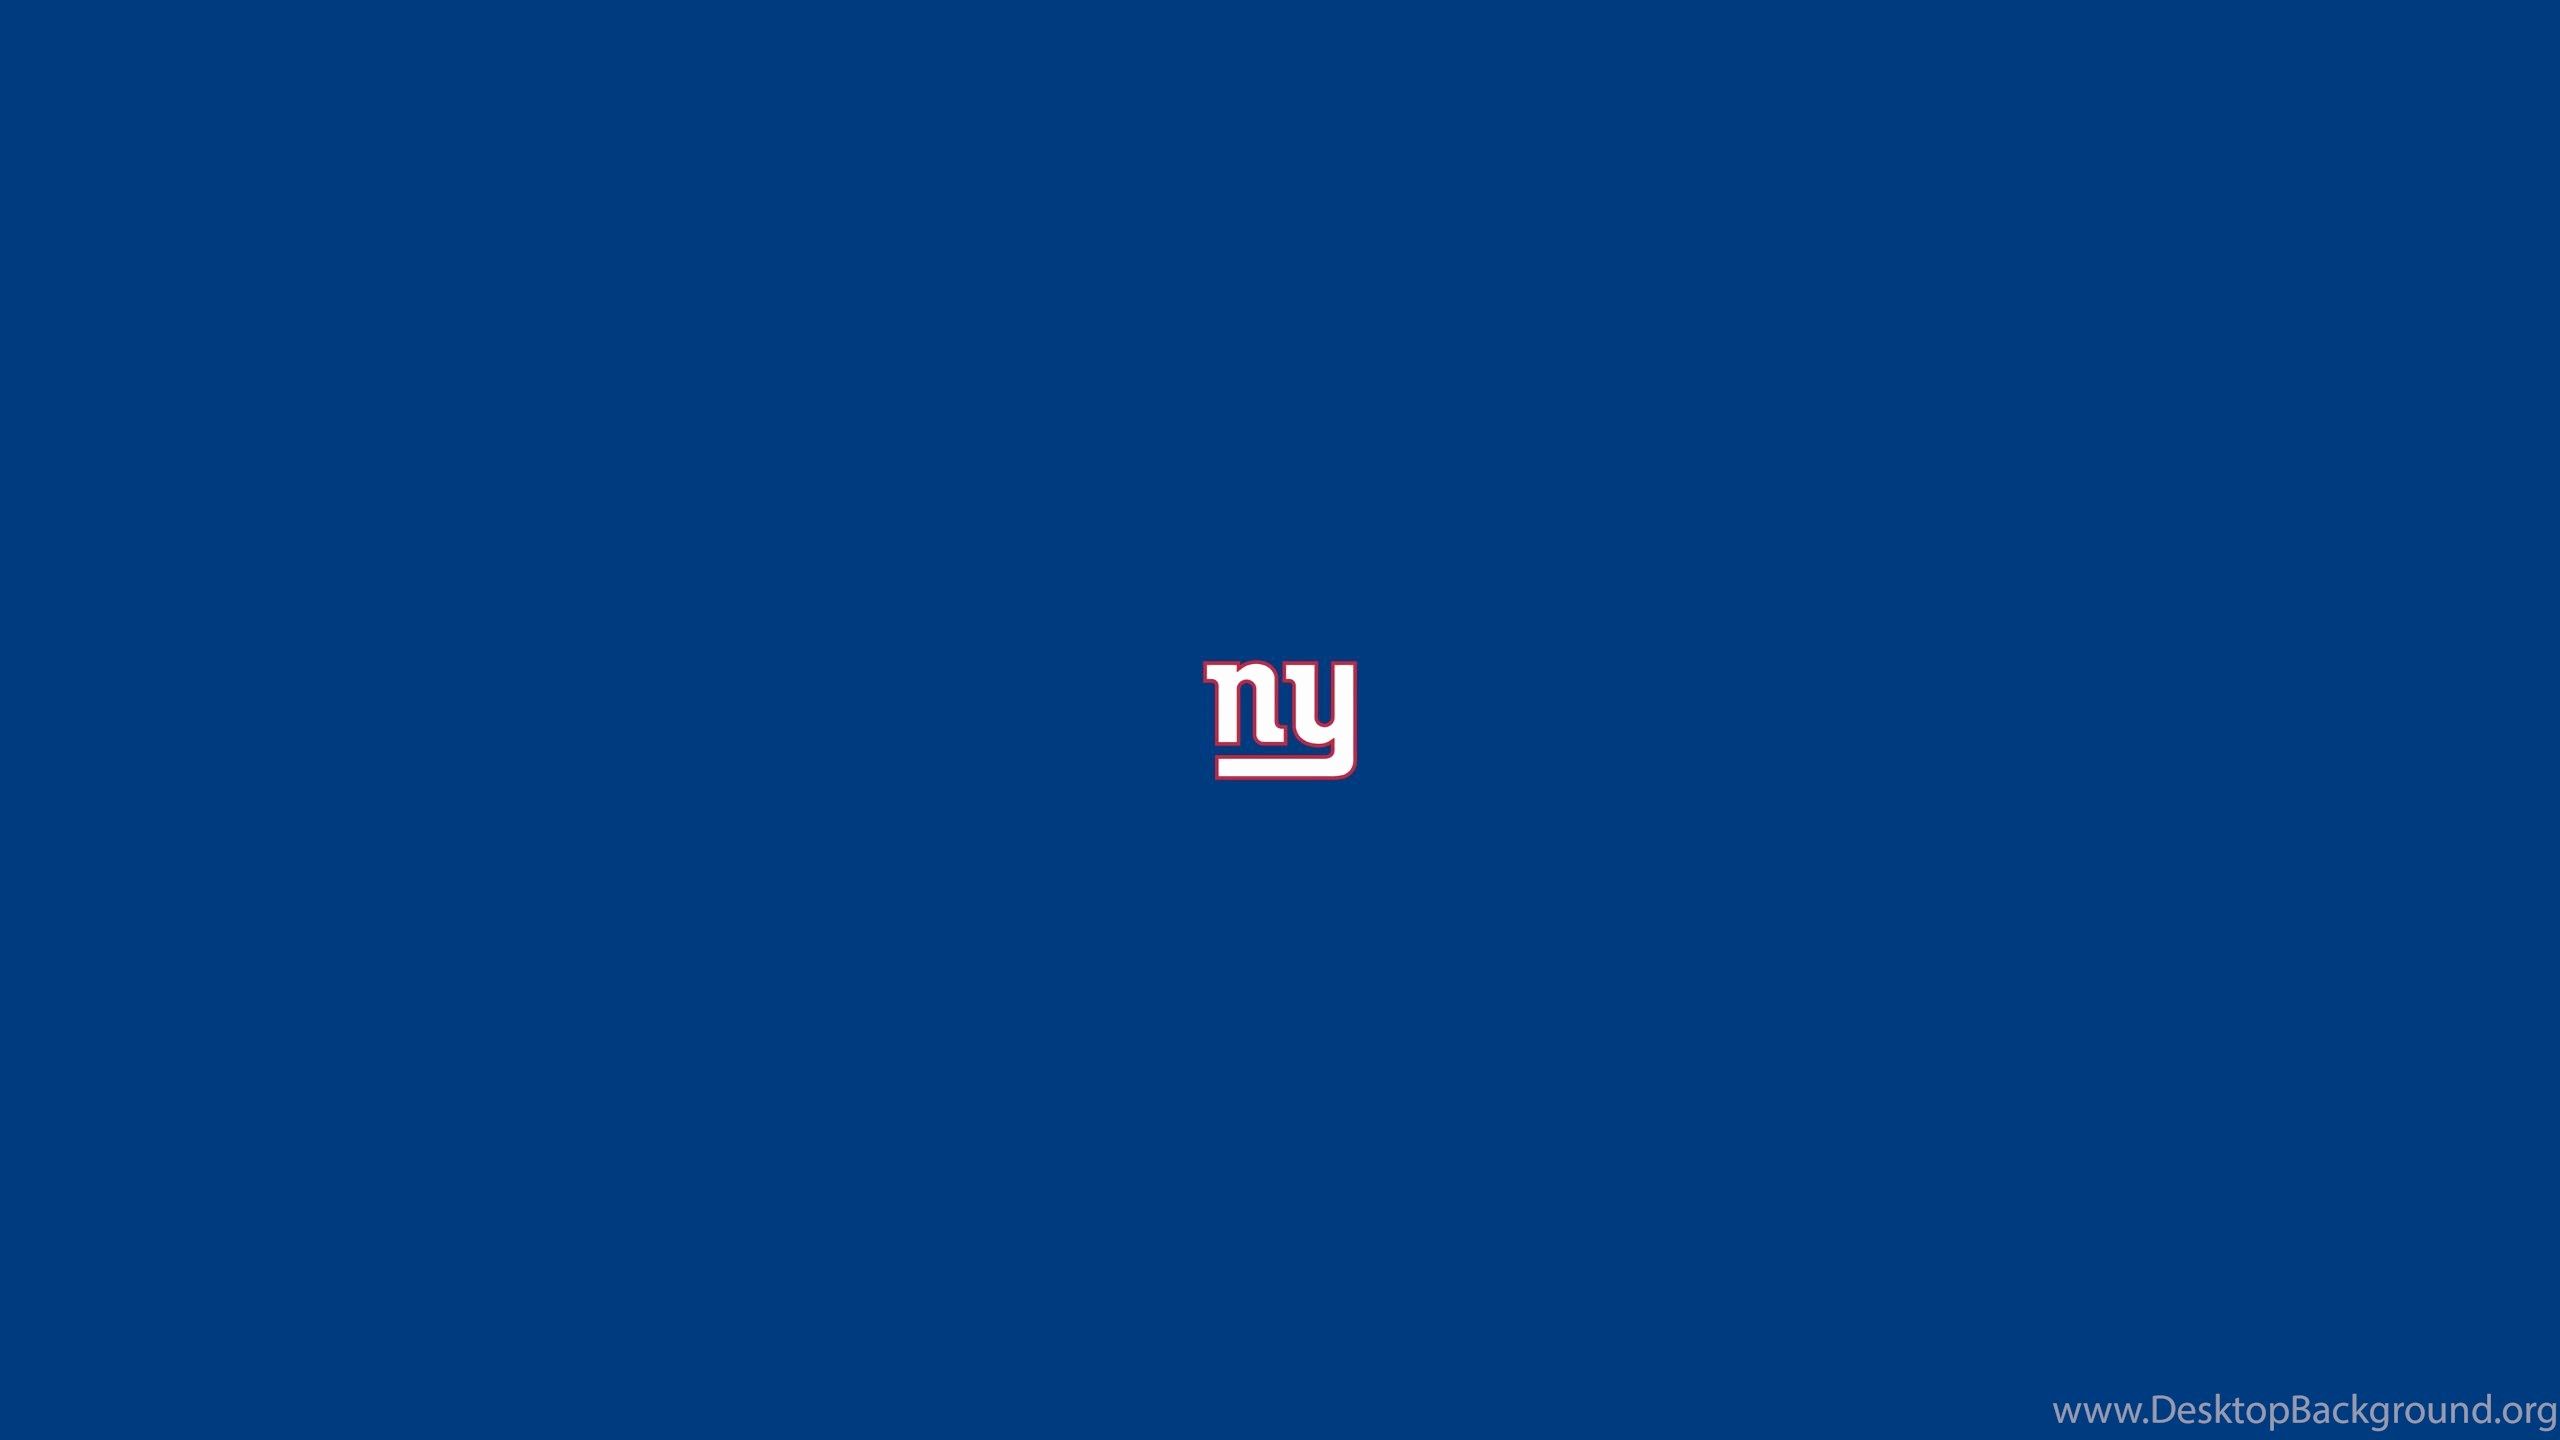 New York Giants Wallpaper Inspirational New York Giants Nfl Football